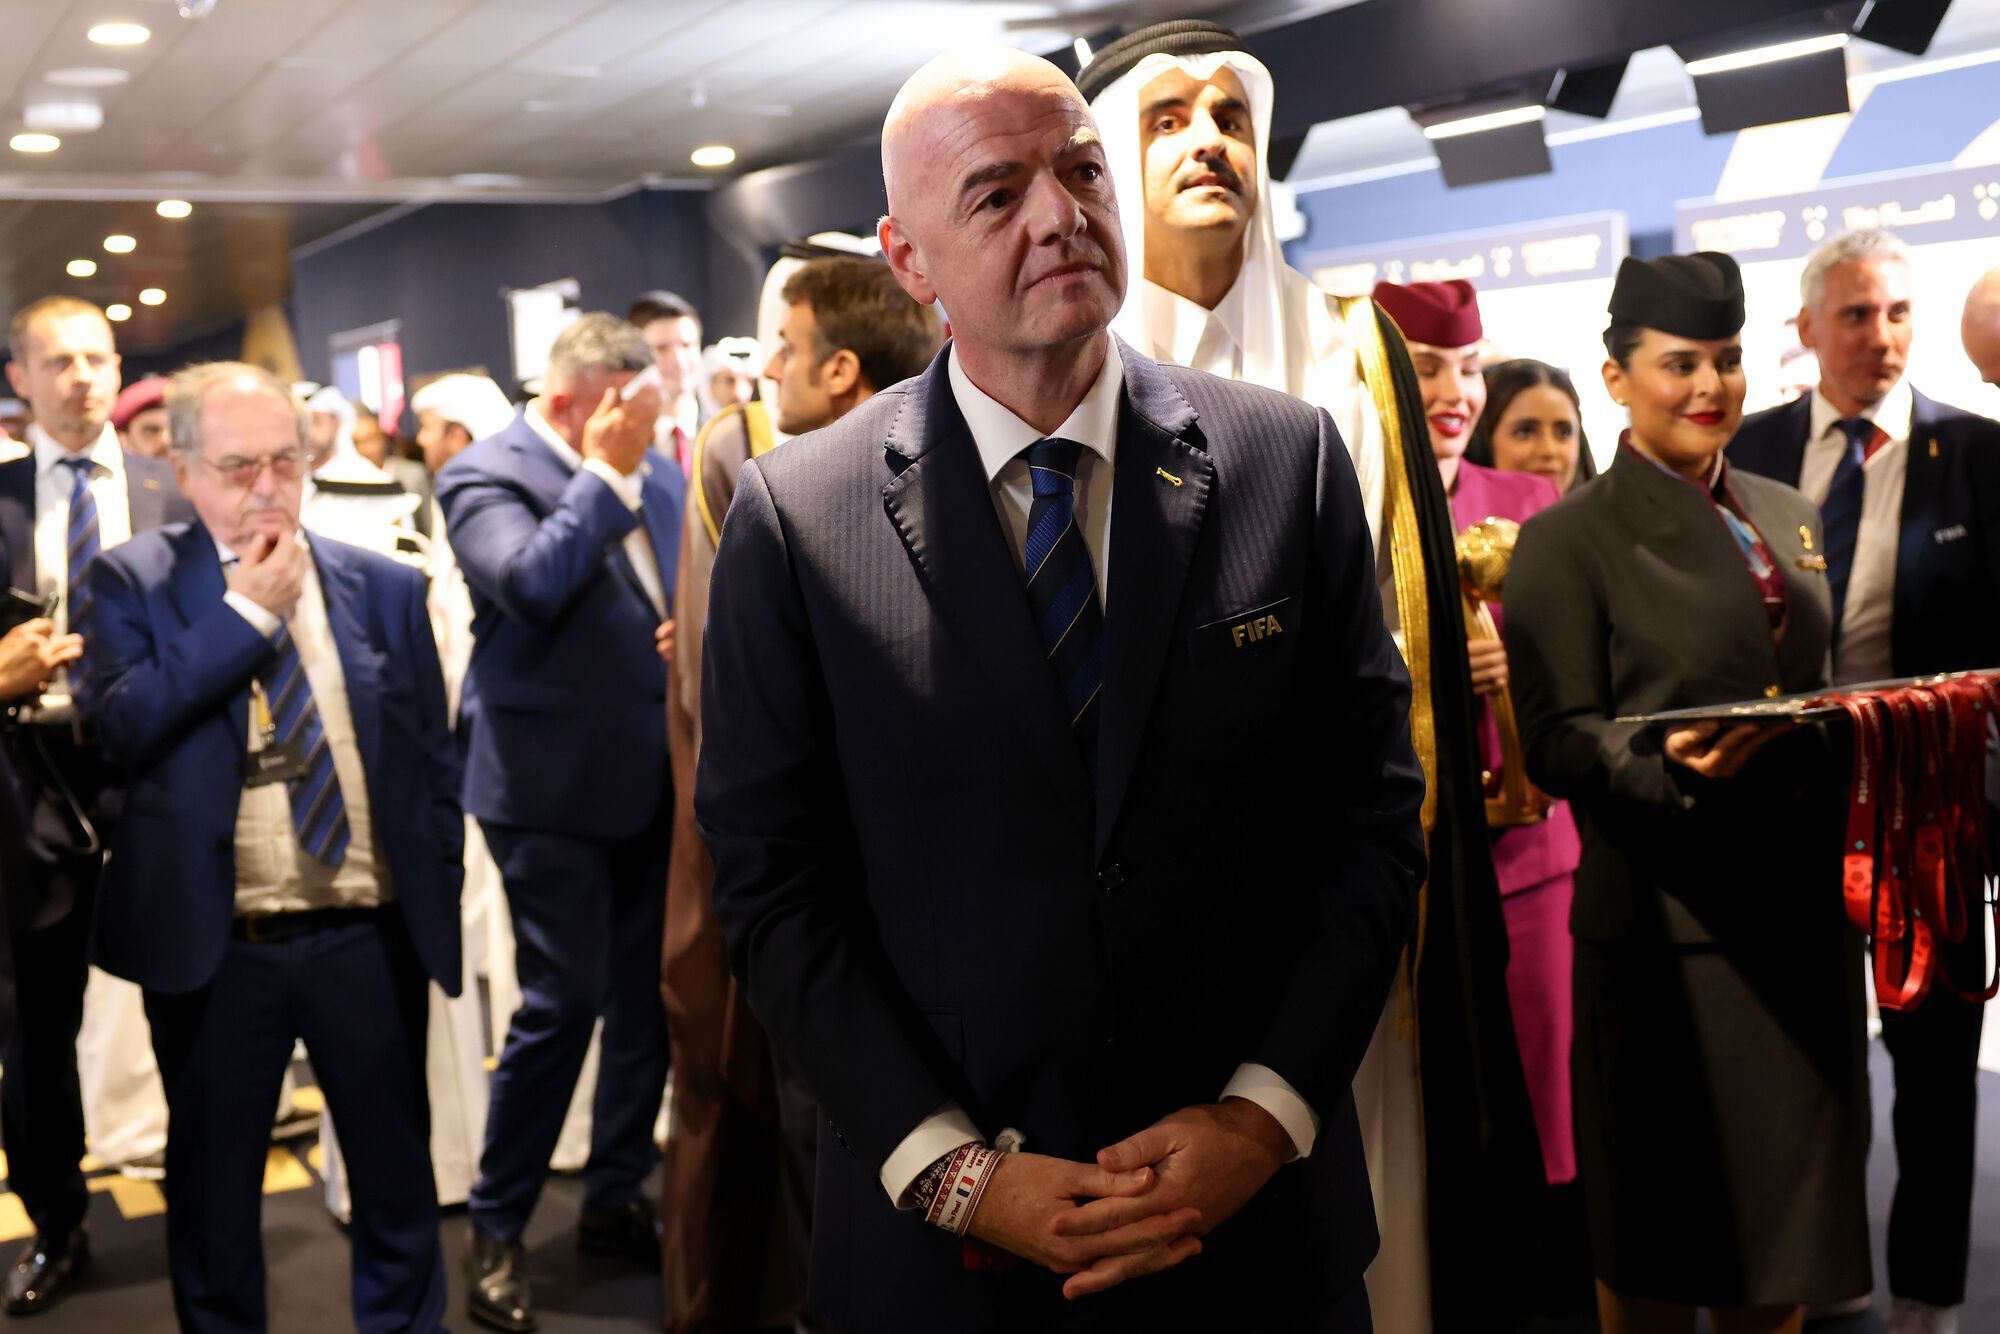 Президент ФИФА отметился гнусным поступком у гроба с Пеле. Фотофакт